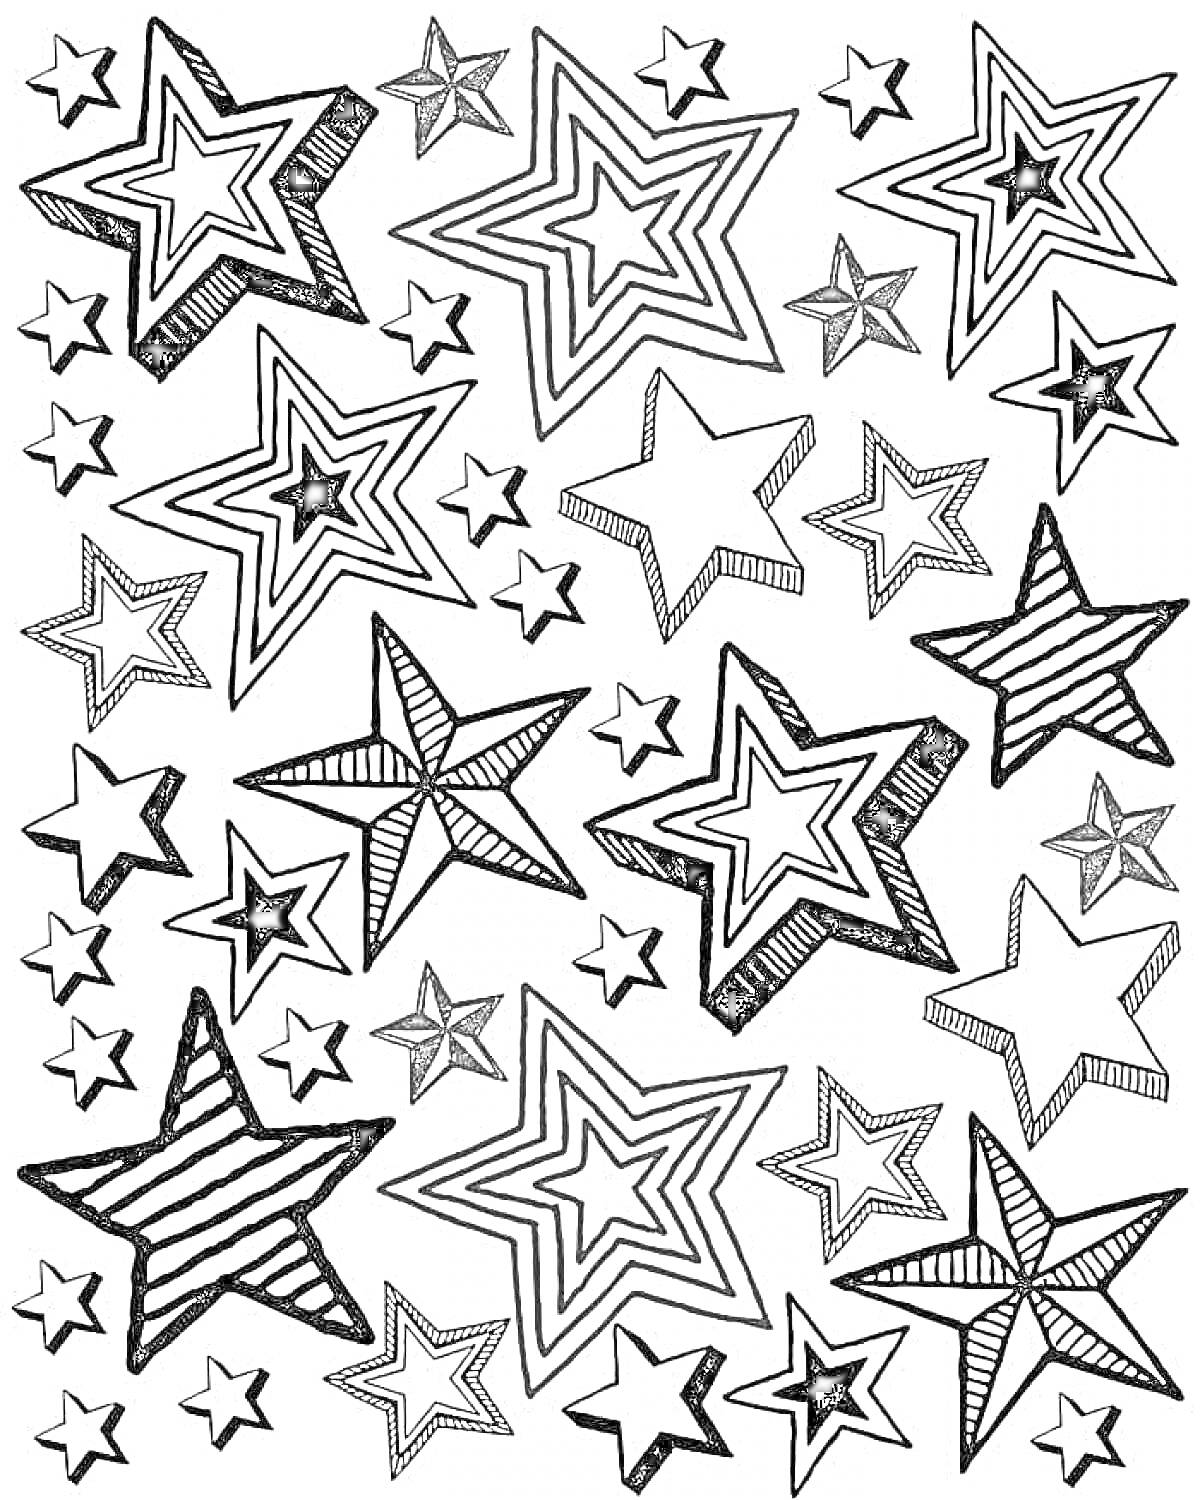 Раскраска с разными звездами: большие и маленькие, полосатые и орнаментальные звездочки